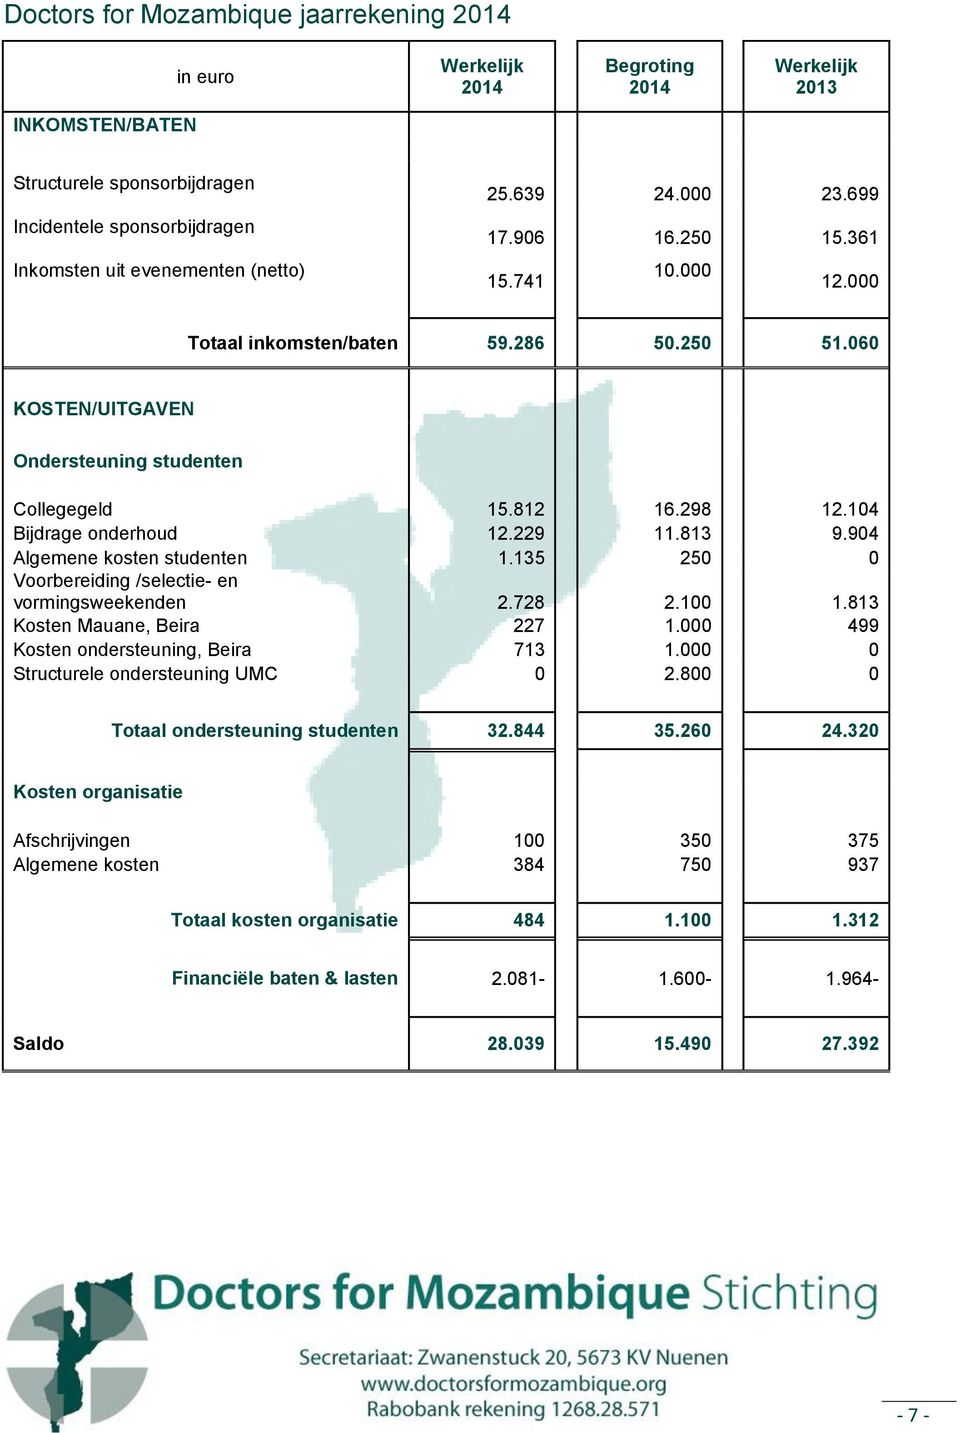 904 Algemene kosten studenten 1.135 250 0 Voorbereiding /selectie- en vormingsweekenden 2.728 2.100 1.813 Kosten Mauane, Beira 227 1.000 499 Kosten ondersteuning, Beira 713 1.